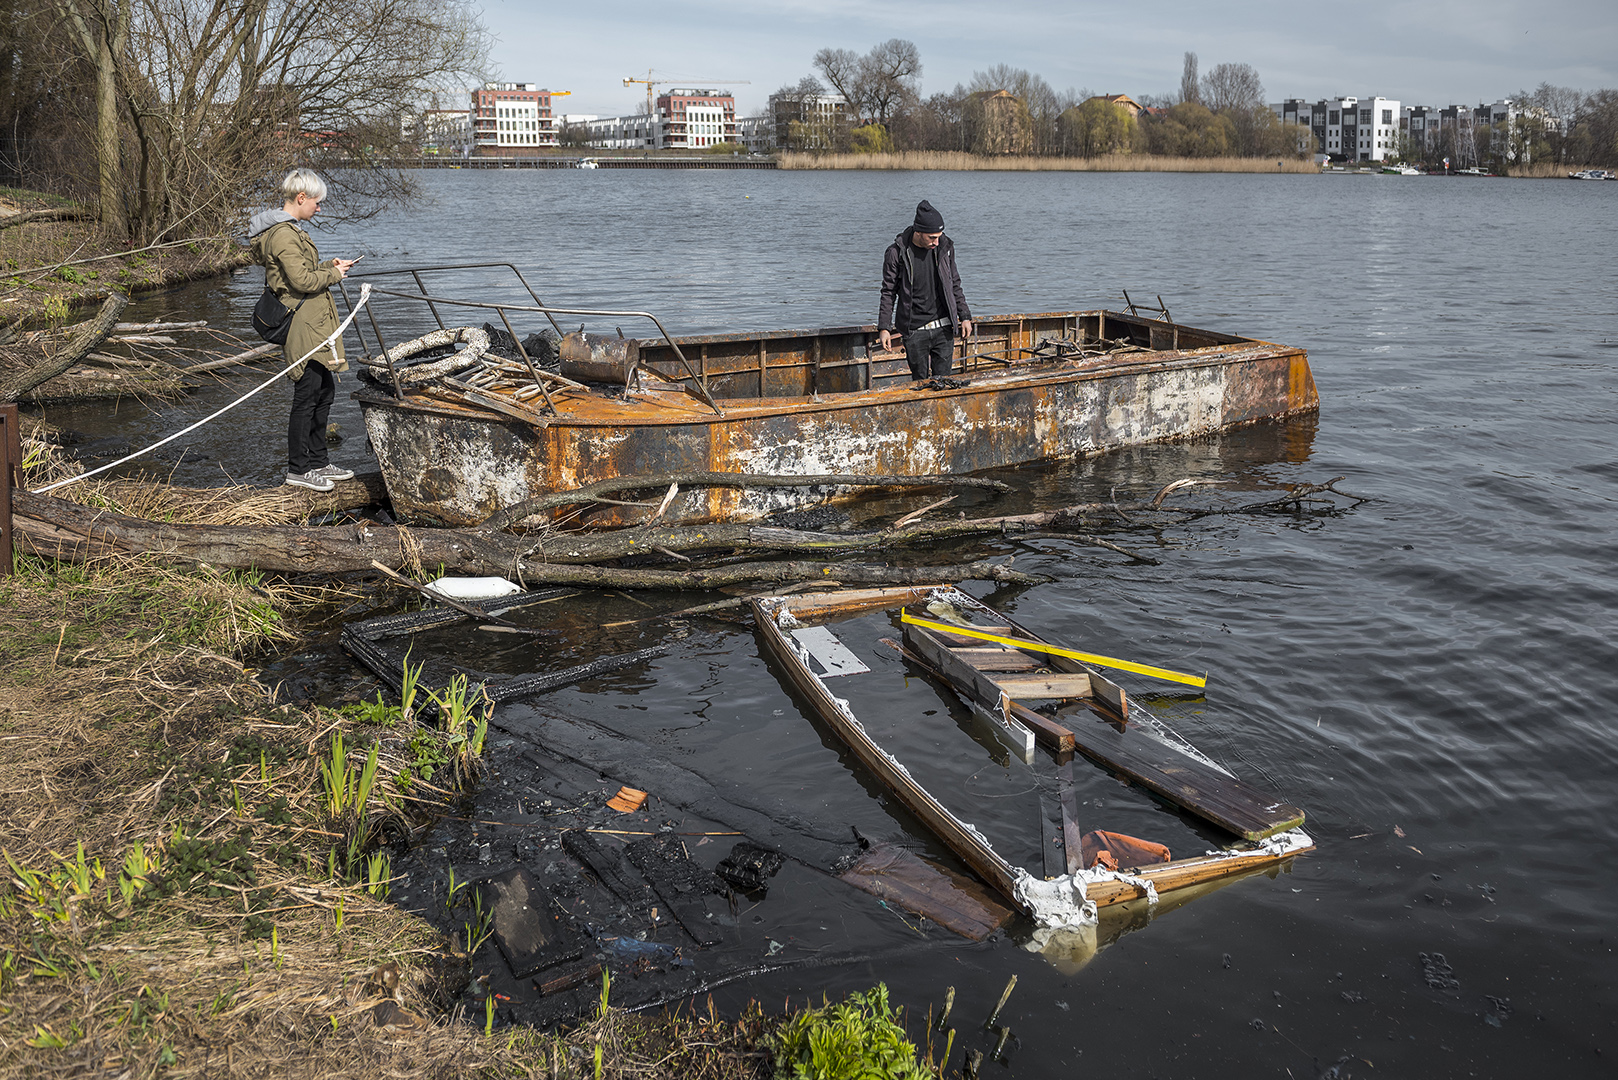 Ausgebrannte Boote von Lummerland. Mahoudi (?) begutachtet was von seinem Boot übrig geblieben ist. Rummelsburger Bucht, Berlin Lichtenberg, 25.03.2017